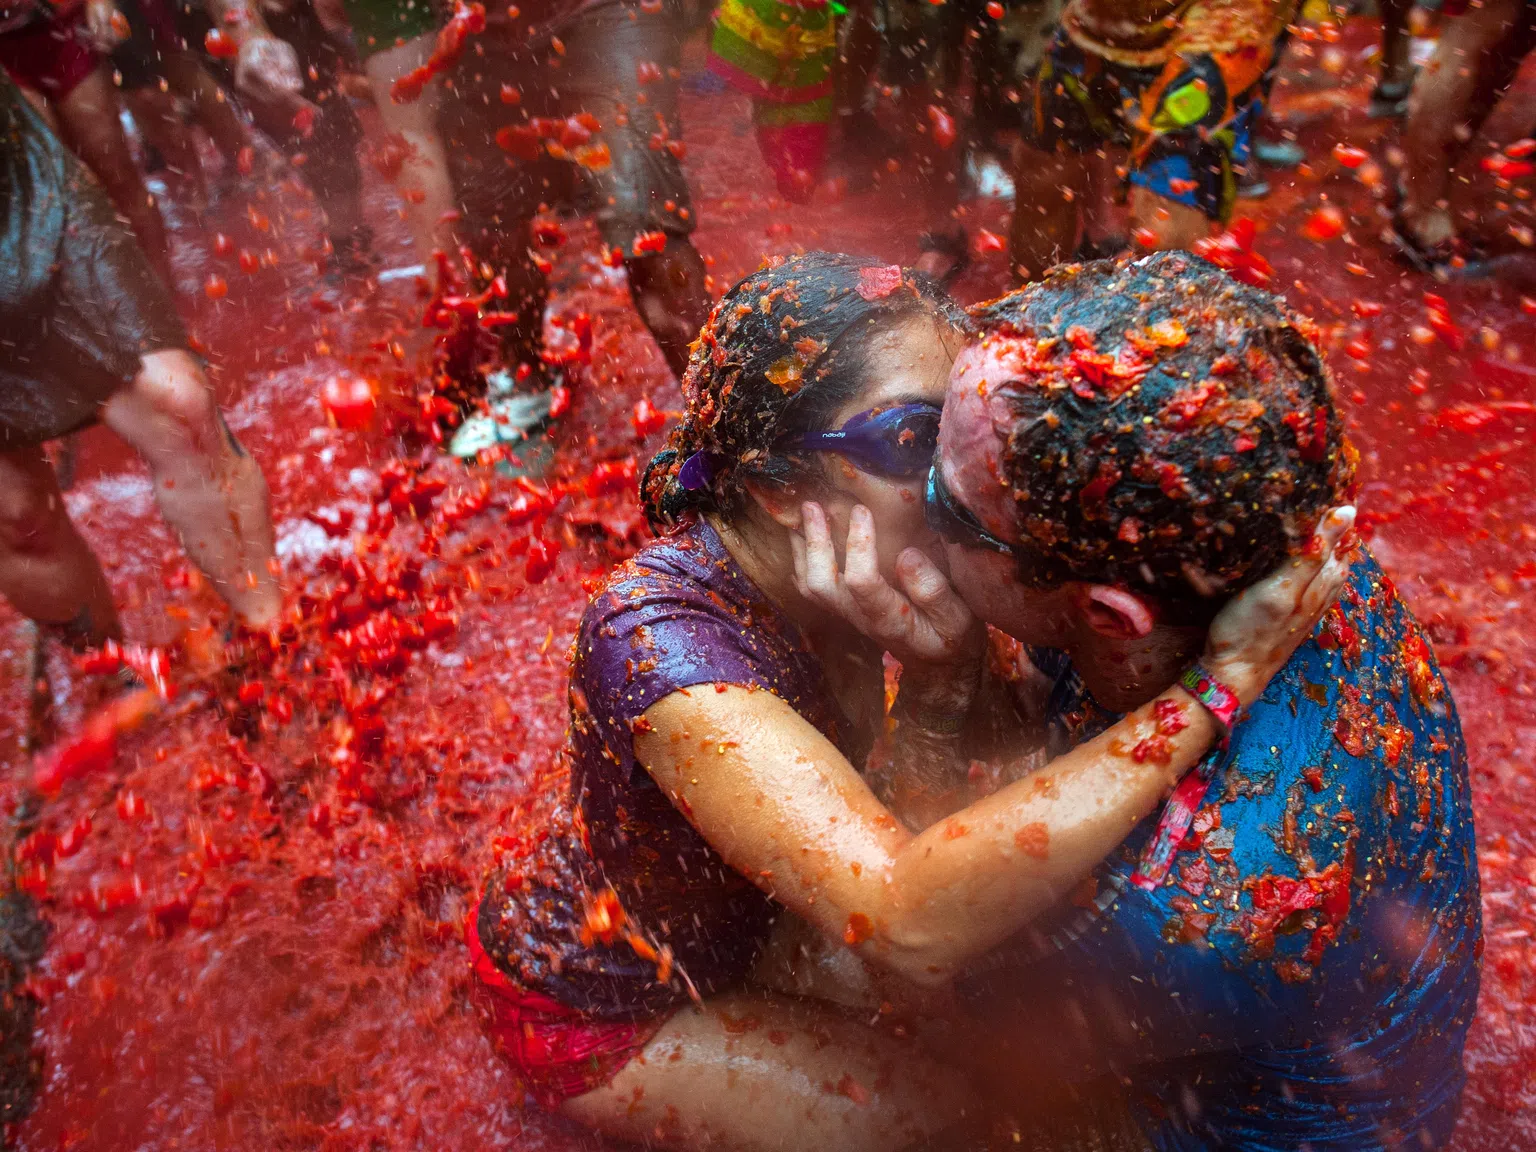 15 000 души влязоха в битка на фестивала "Томатина" - най-големия бой с домати в света